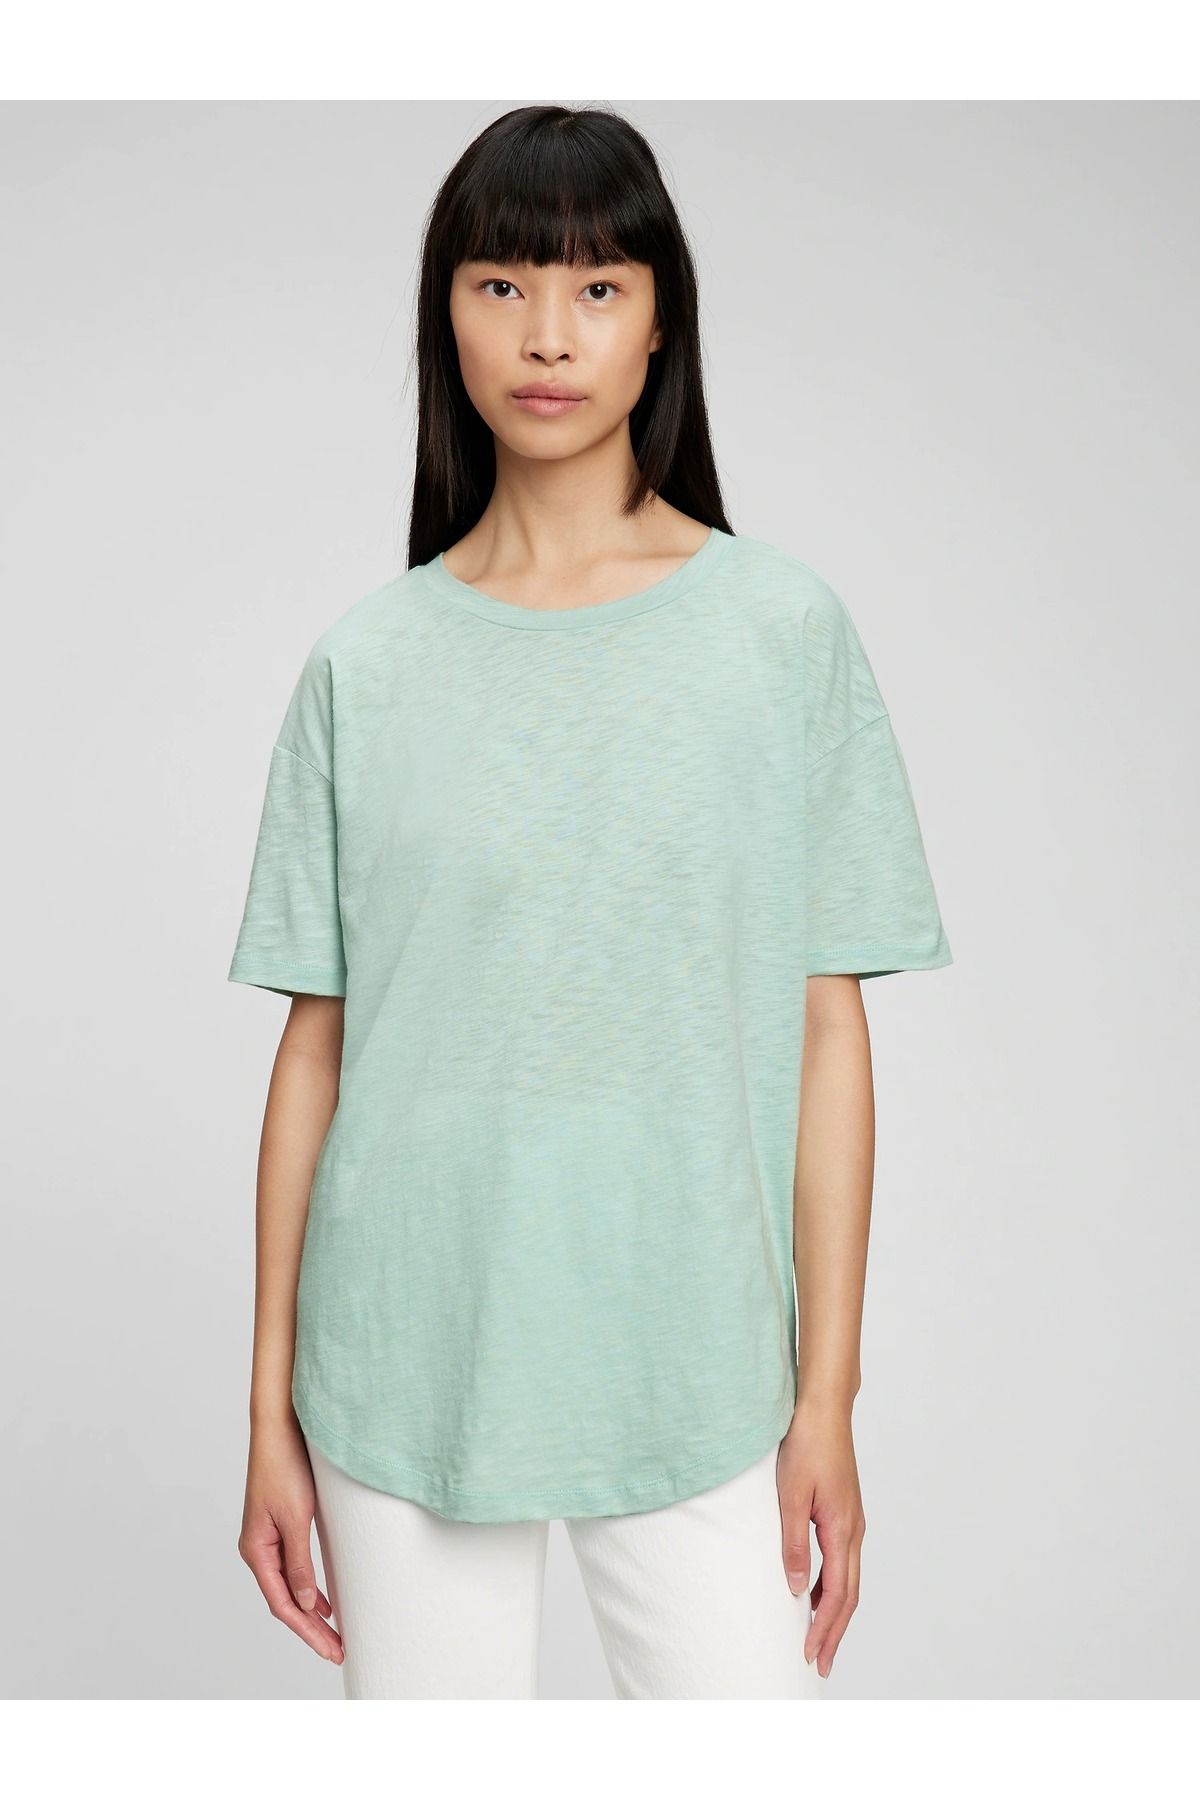 GAP Kadın Açık Mavi 100% Organik Pamuk T-shirt